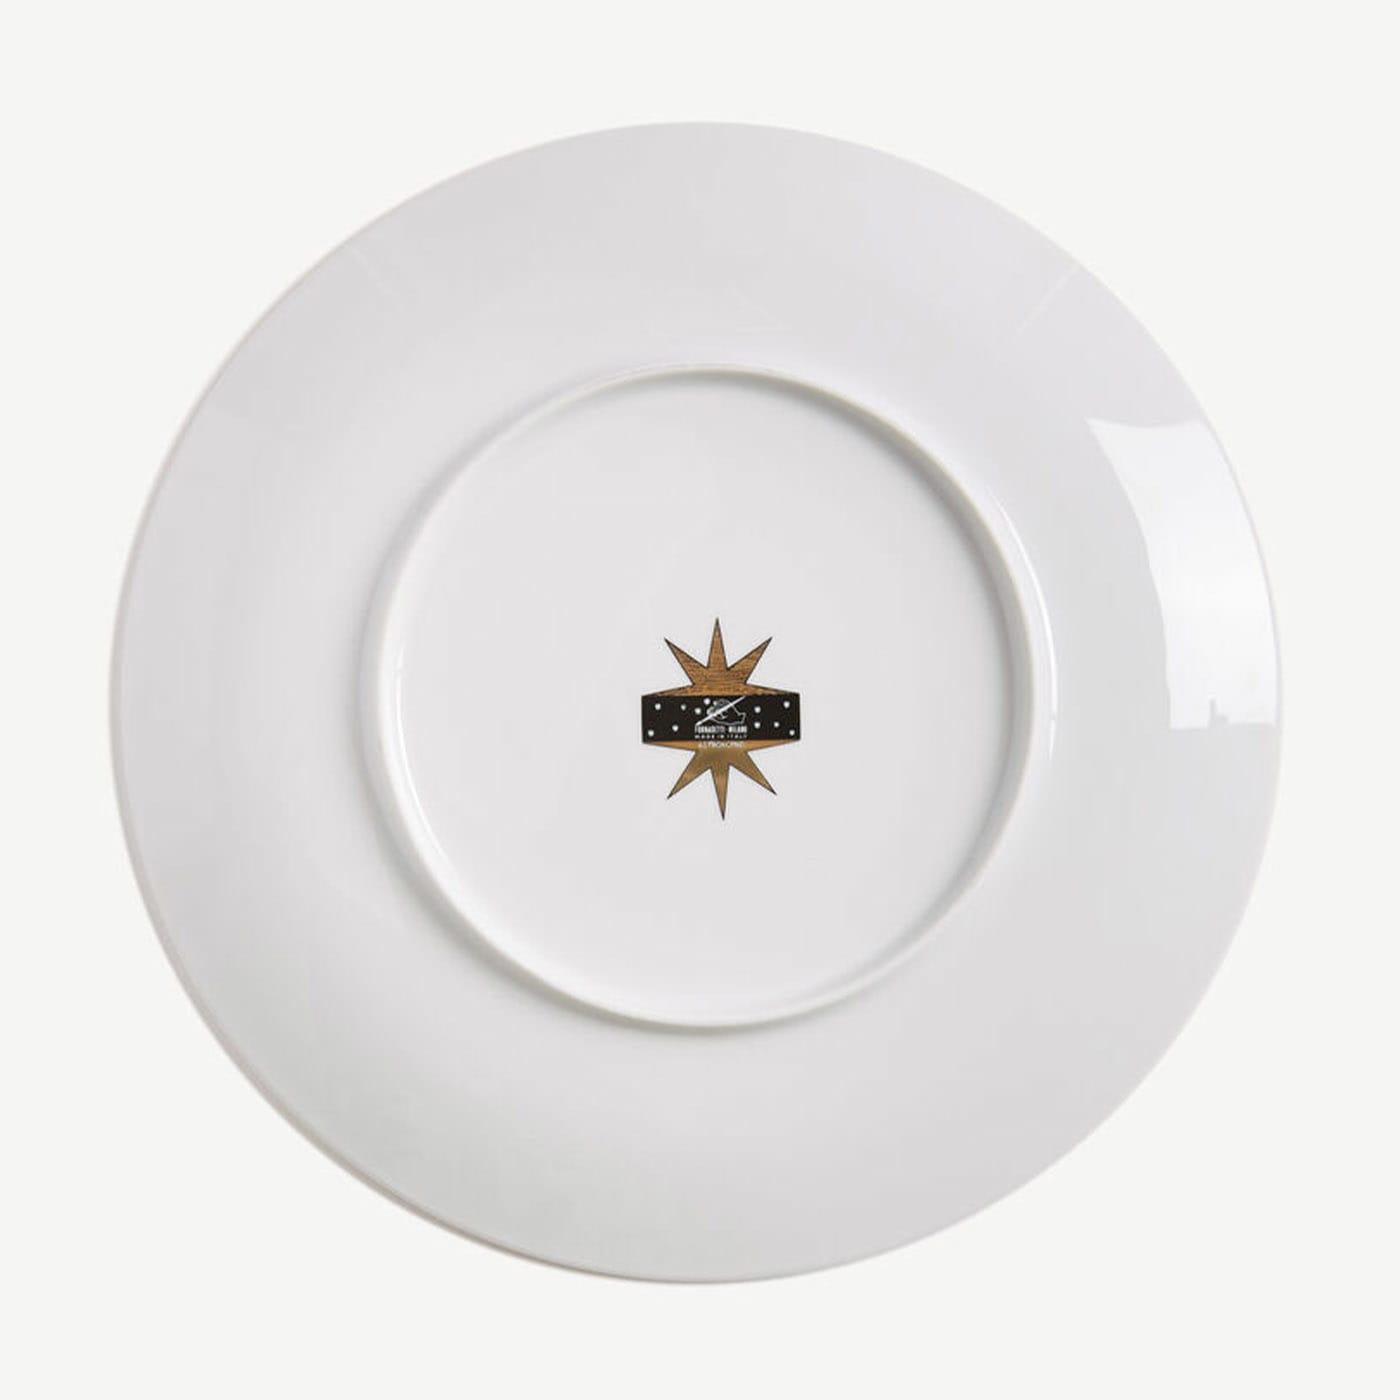 Le motif Fornasetti du Zodiac caractérise cette élégante assiette en porcelaine décorée à la main avec des accents dorés : une véritable pièce de collection, que vous pouvez utiliser comme ornement pour l'art de la table. Pour le nettoyage, nous